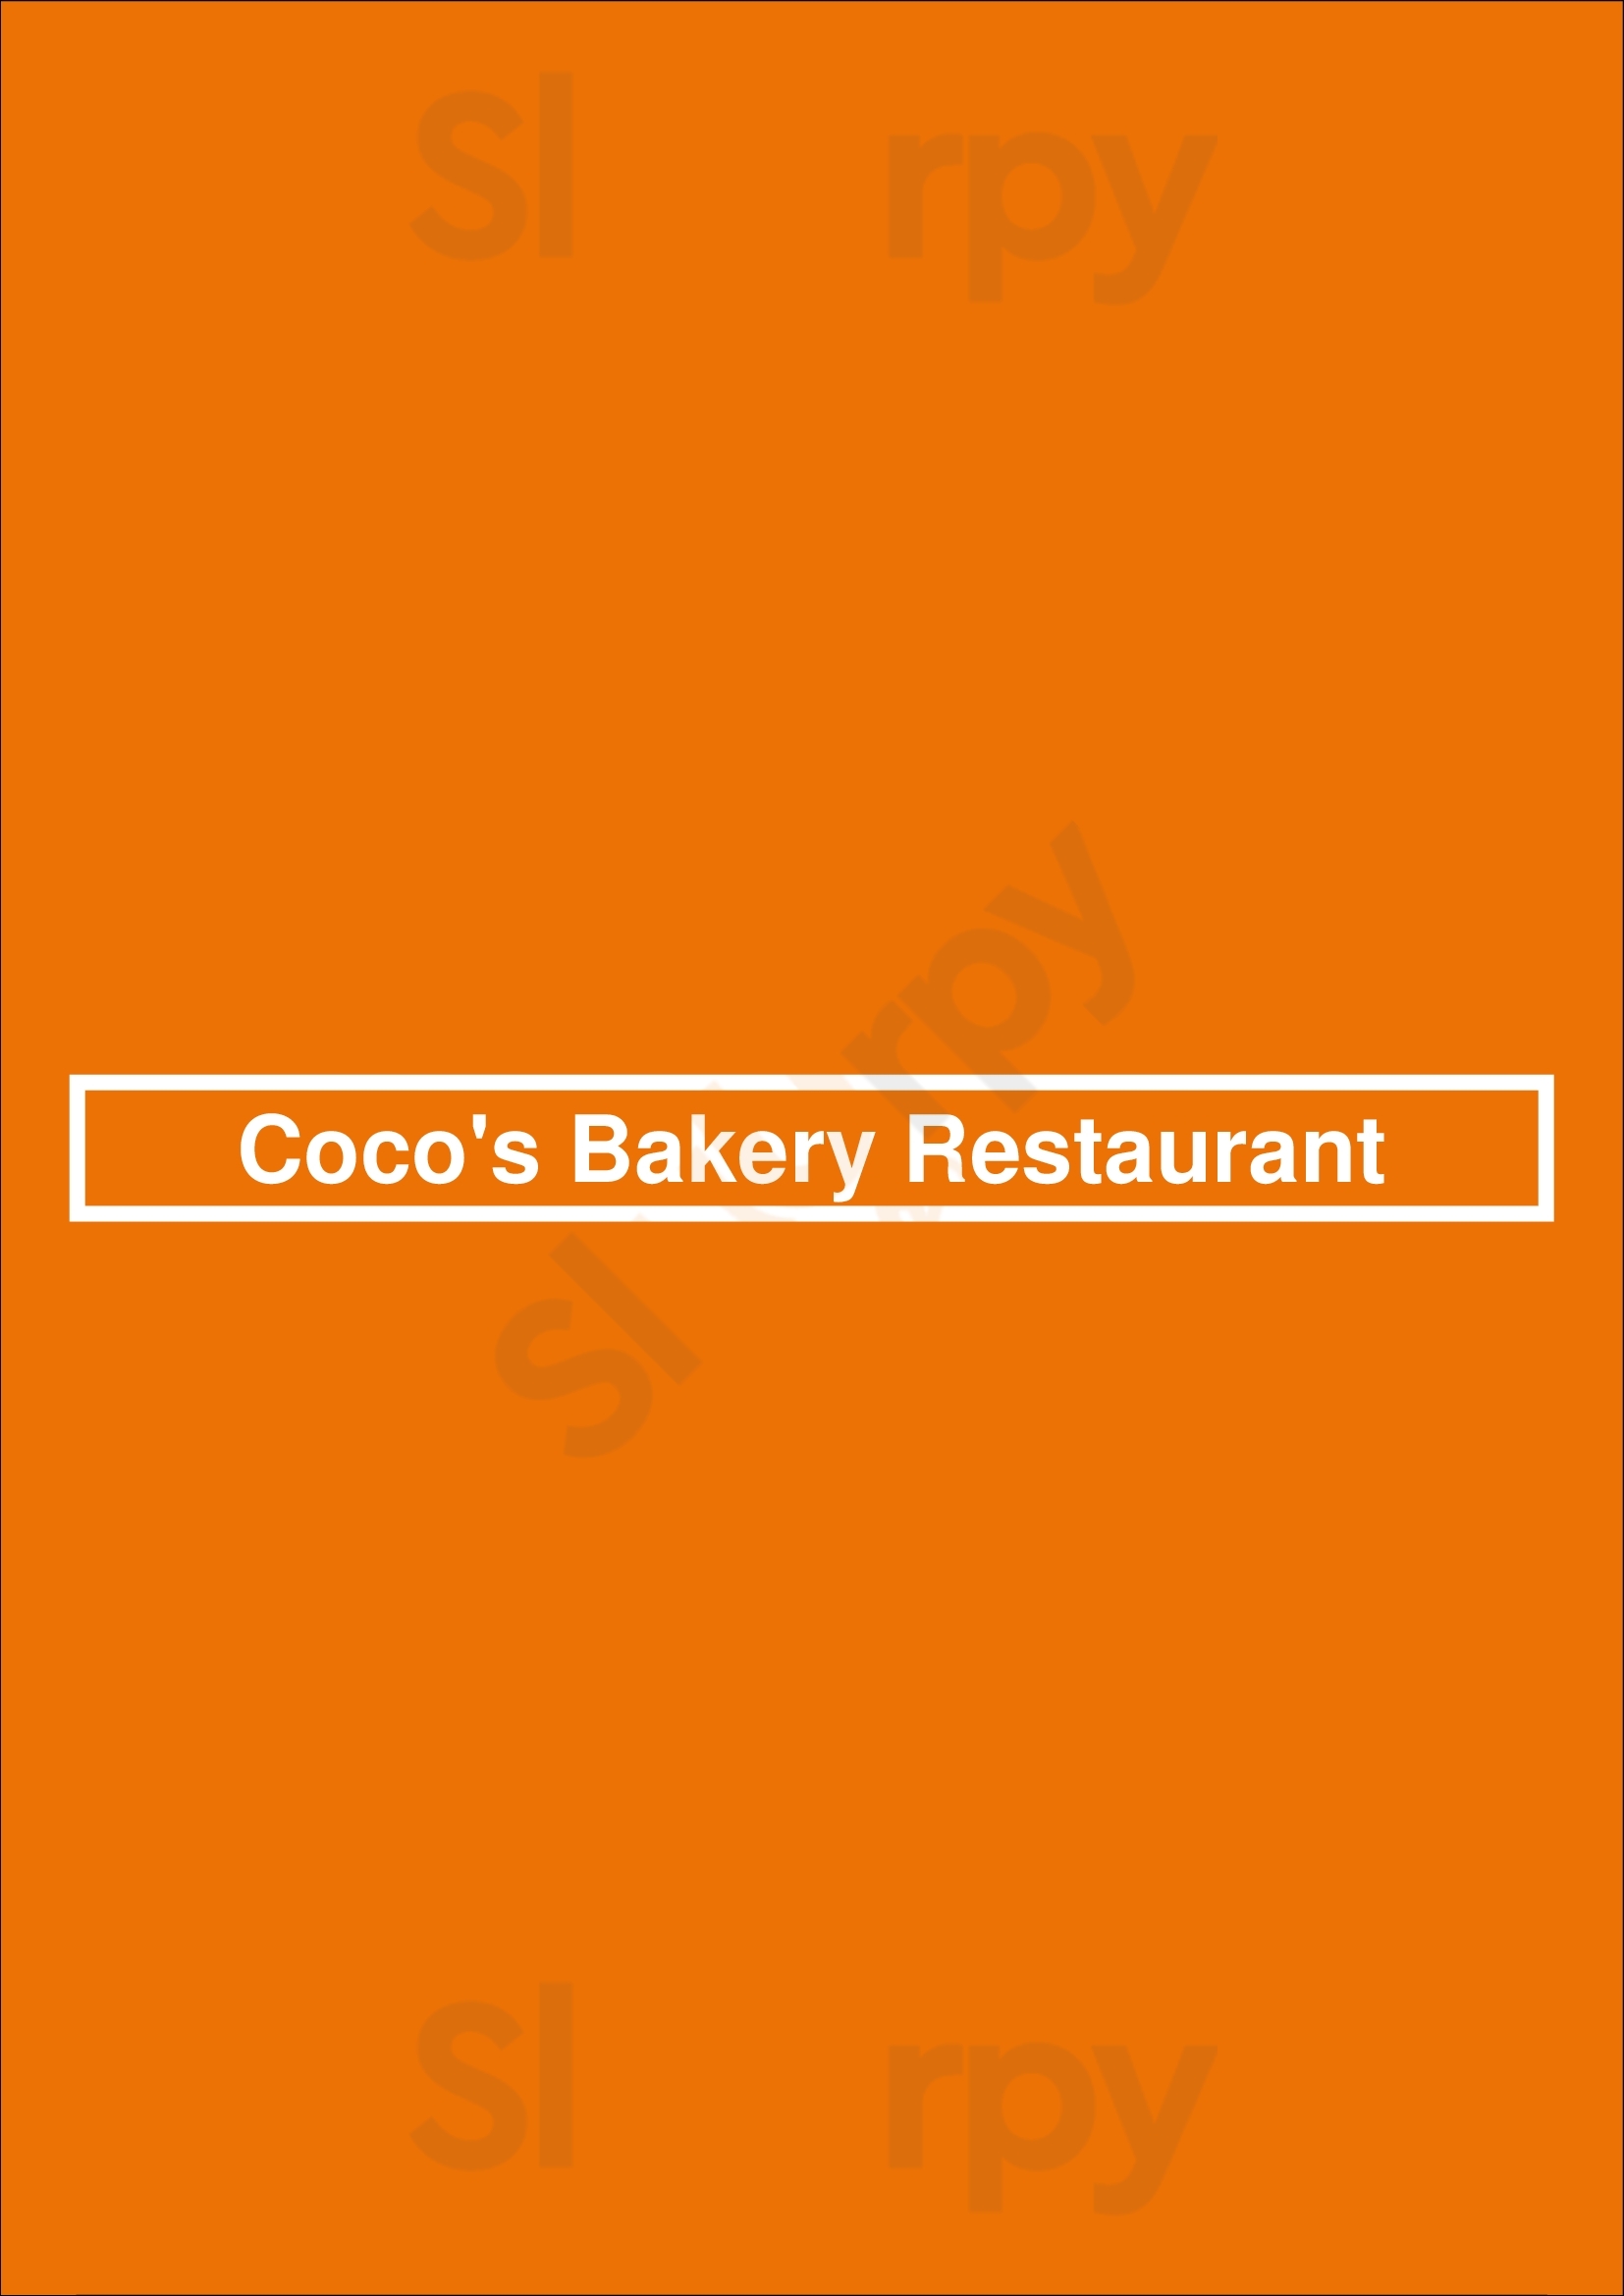 Coco's Bakery Restaurant Los Angeles Menu - 1